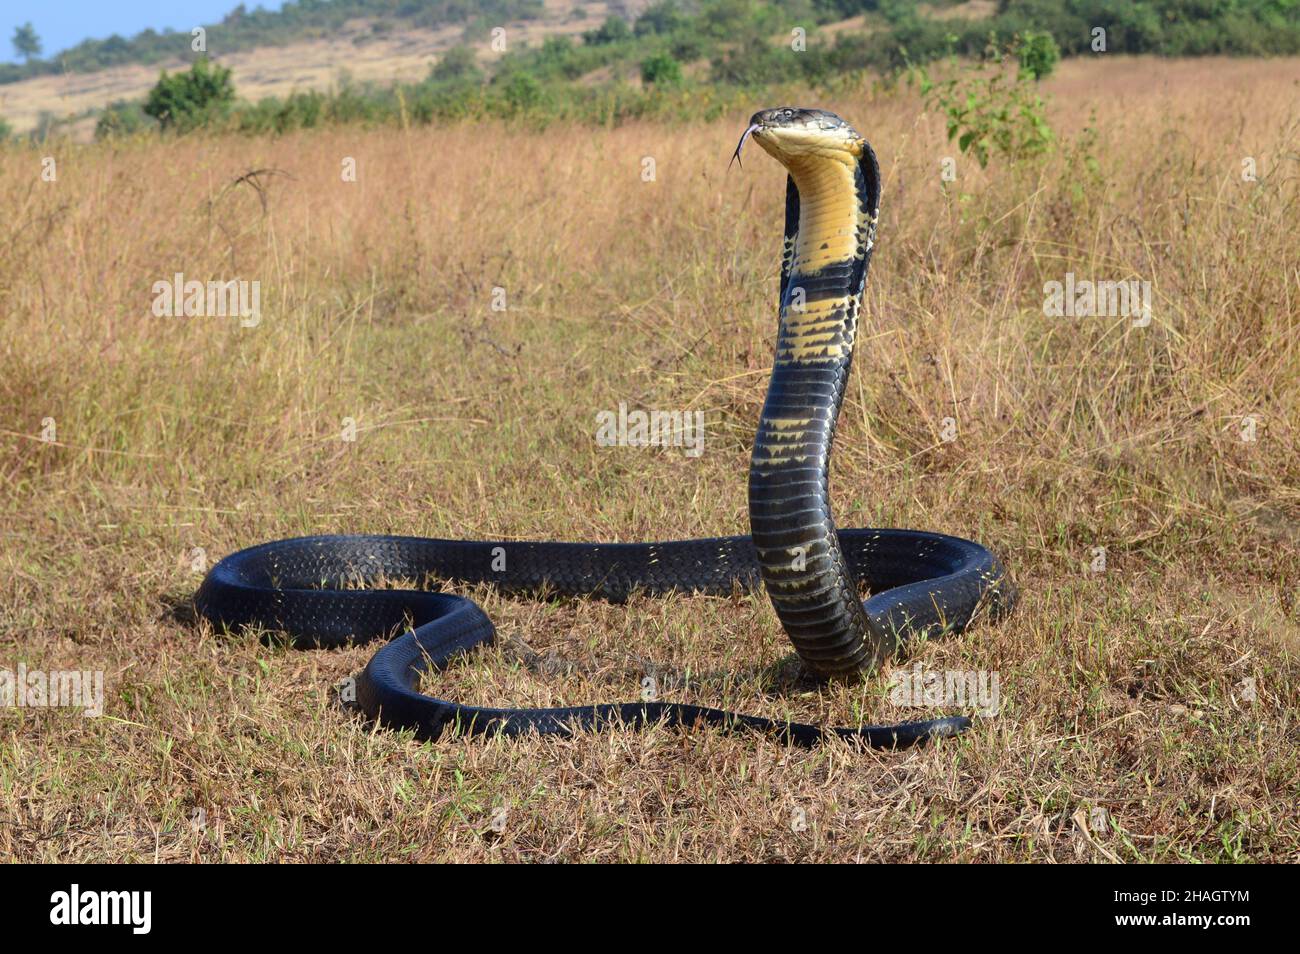 Re cobra, Ophiophagus hannah è una specie di serpente velenoso di lapidi endemici a giungle nel sud e sud-est asiatico, goa India Foto Stock